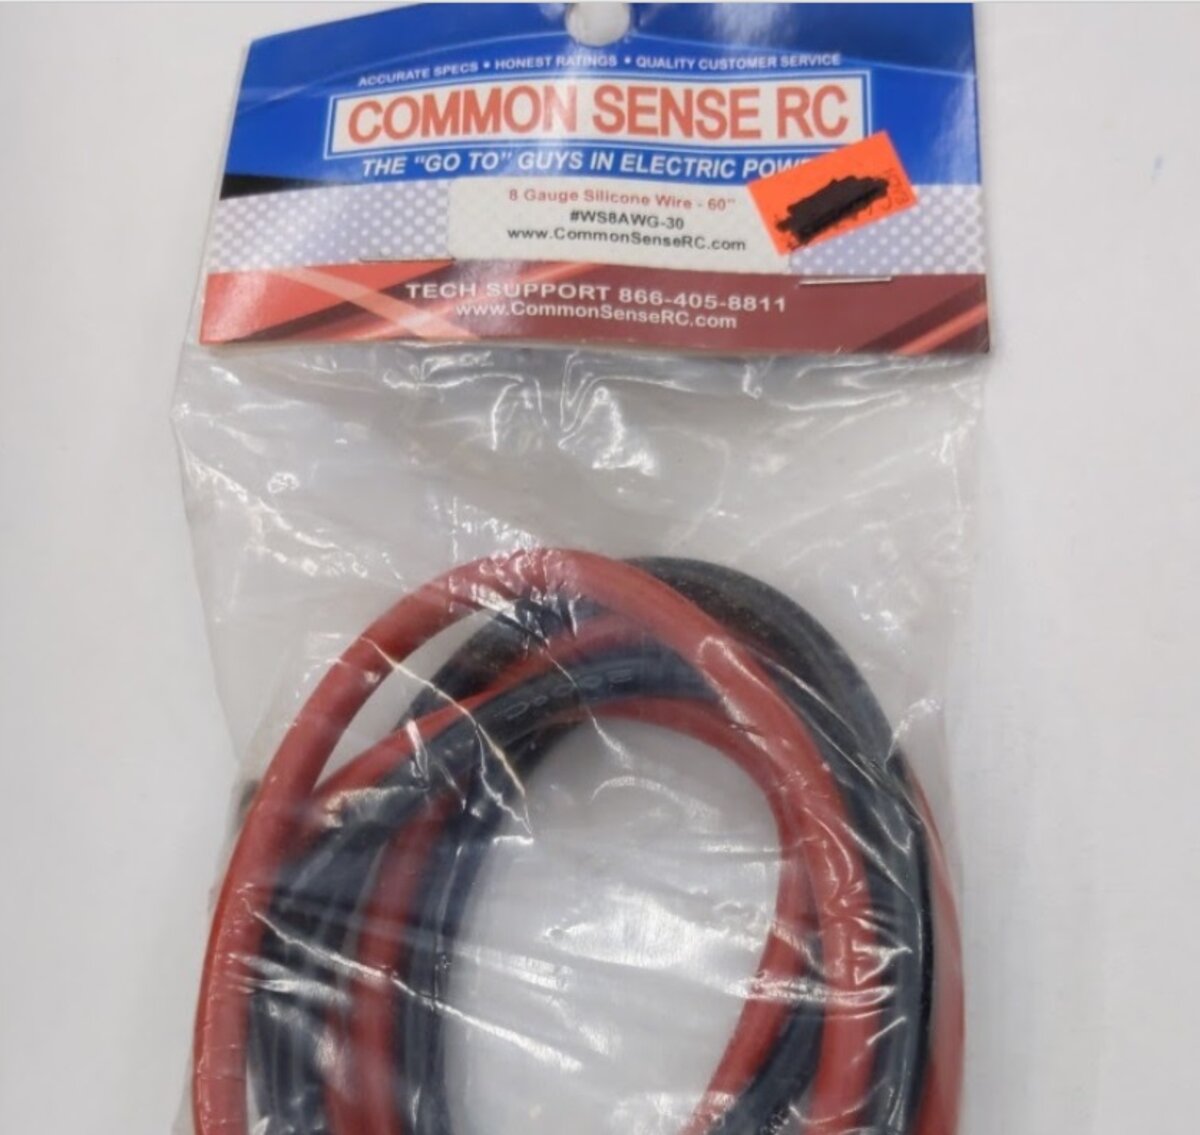 Common Sense RC WS8AWG-30 8 Guage Silicone Wire 60